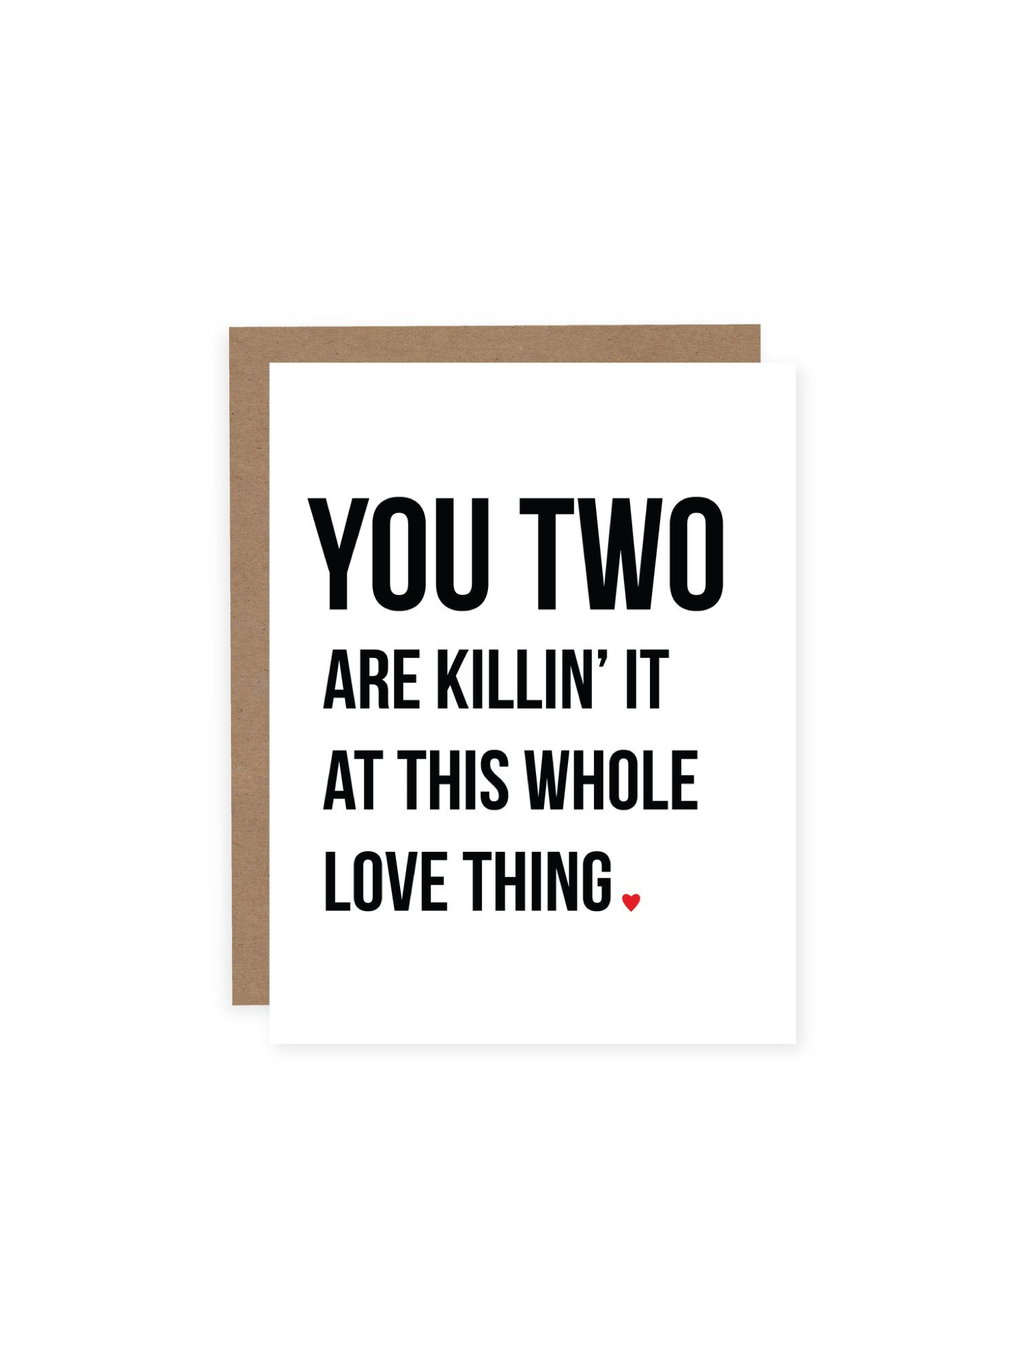 Killin’ It At Love